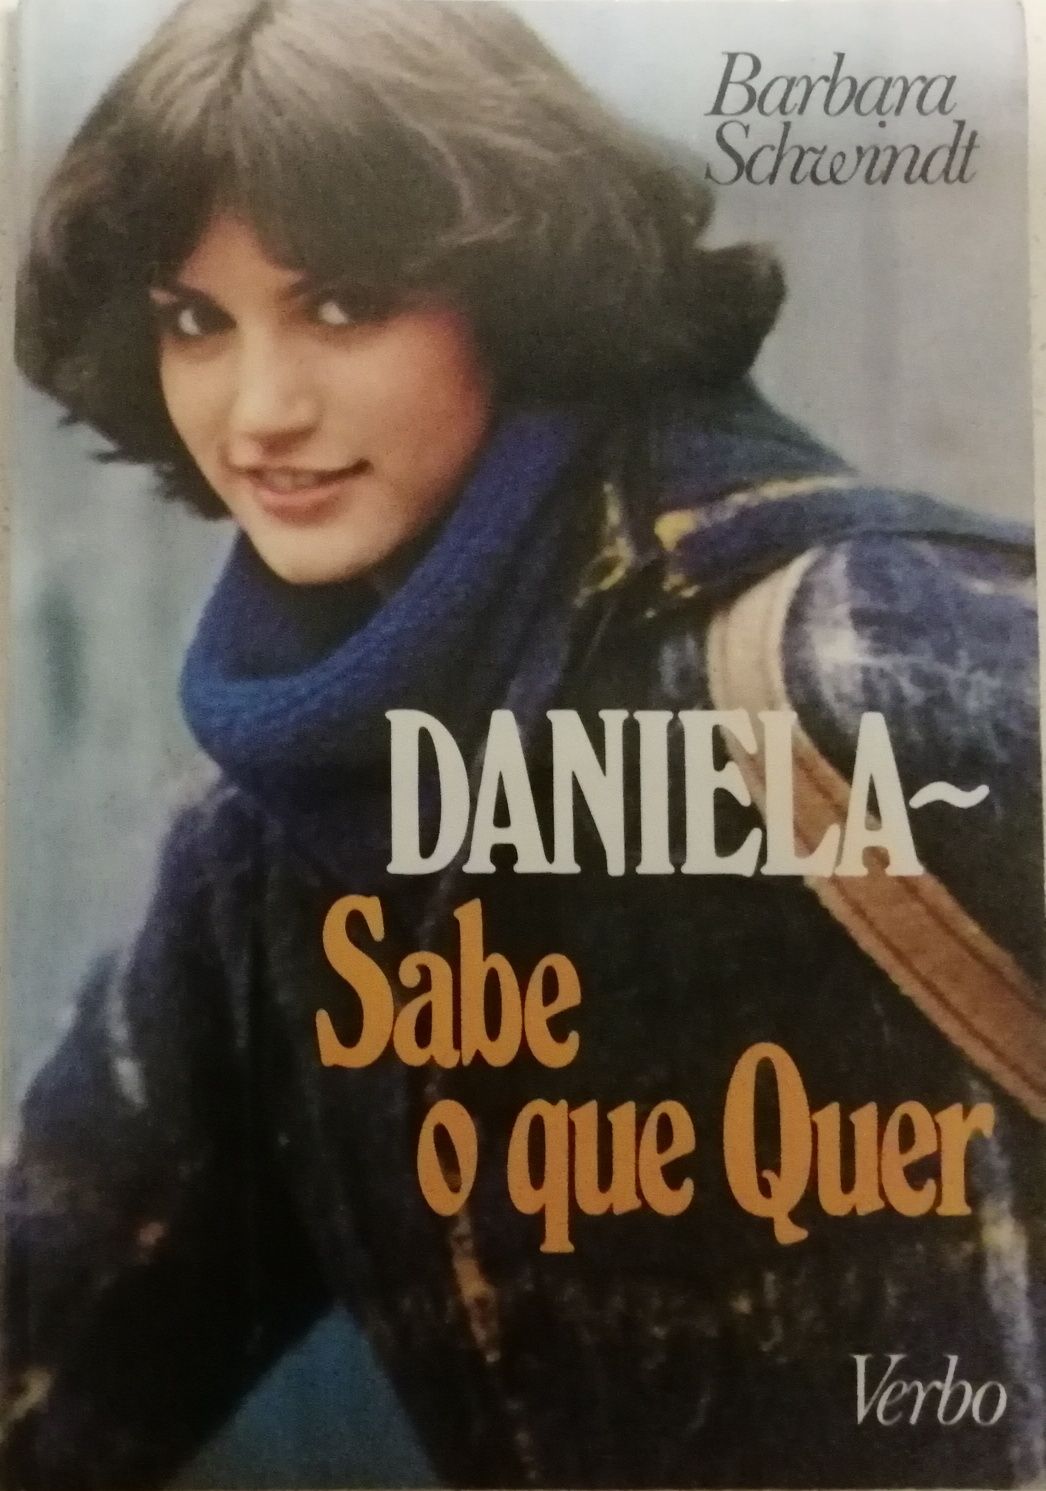 Livro "Daniela Sabe o que Quer"